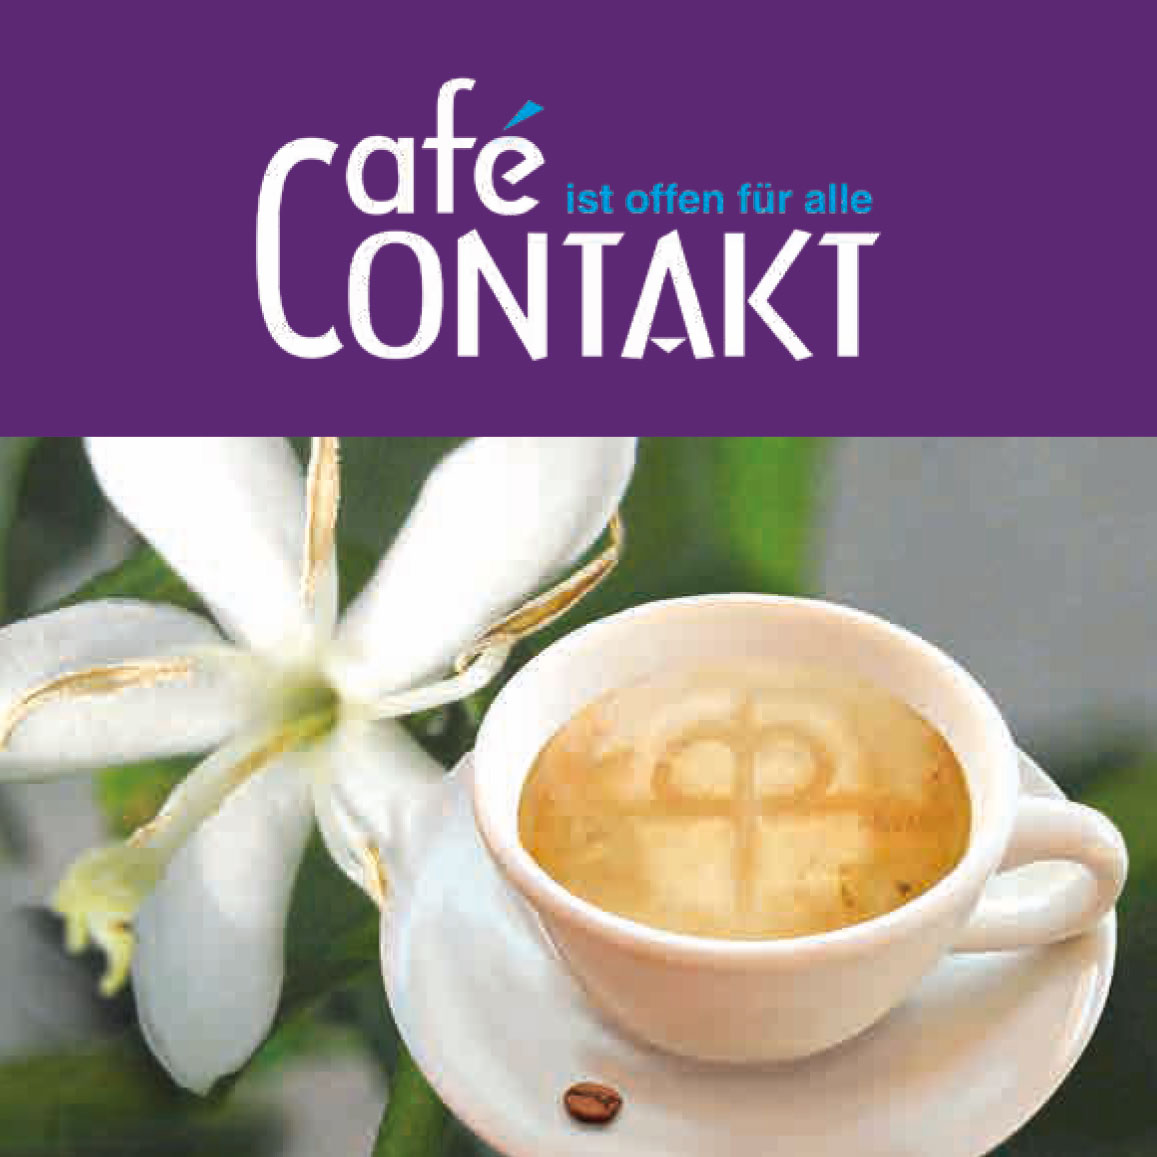 Cafe Contakt